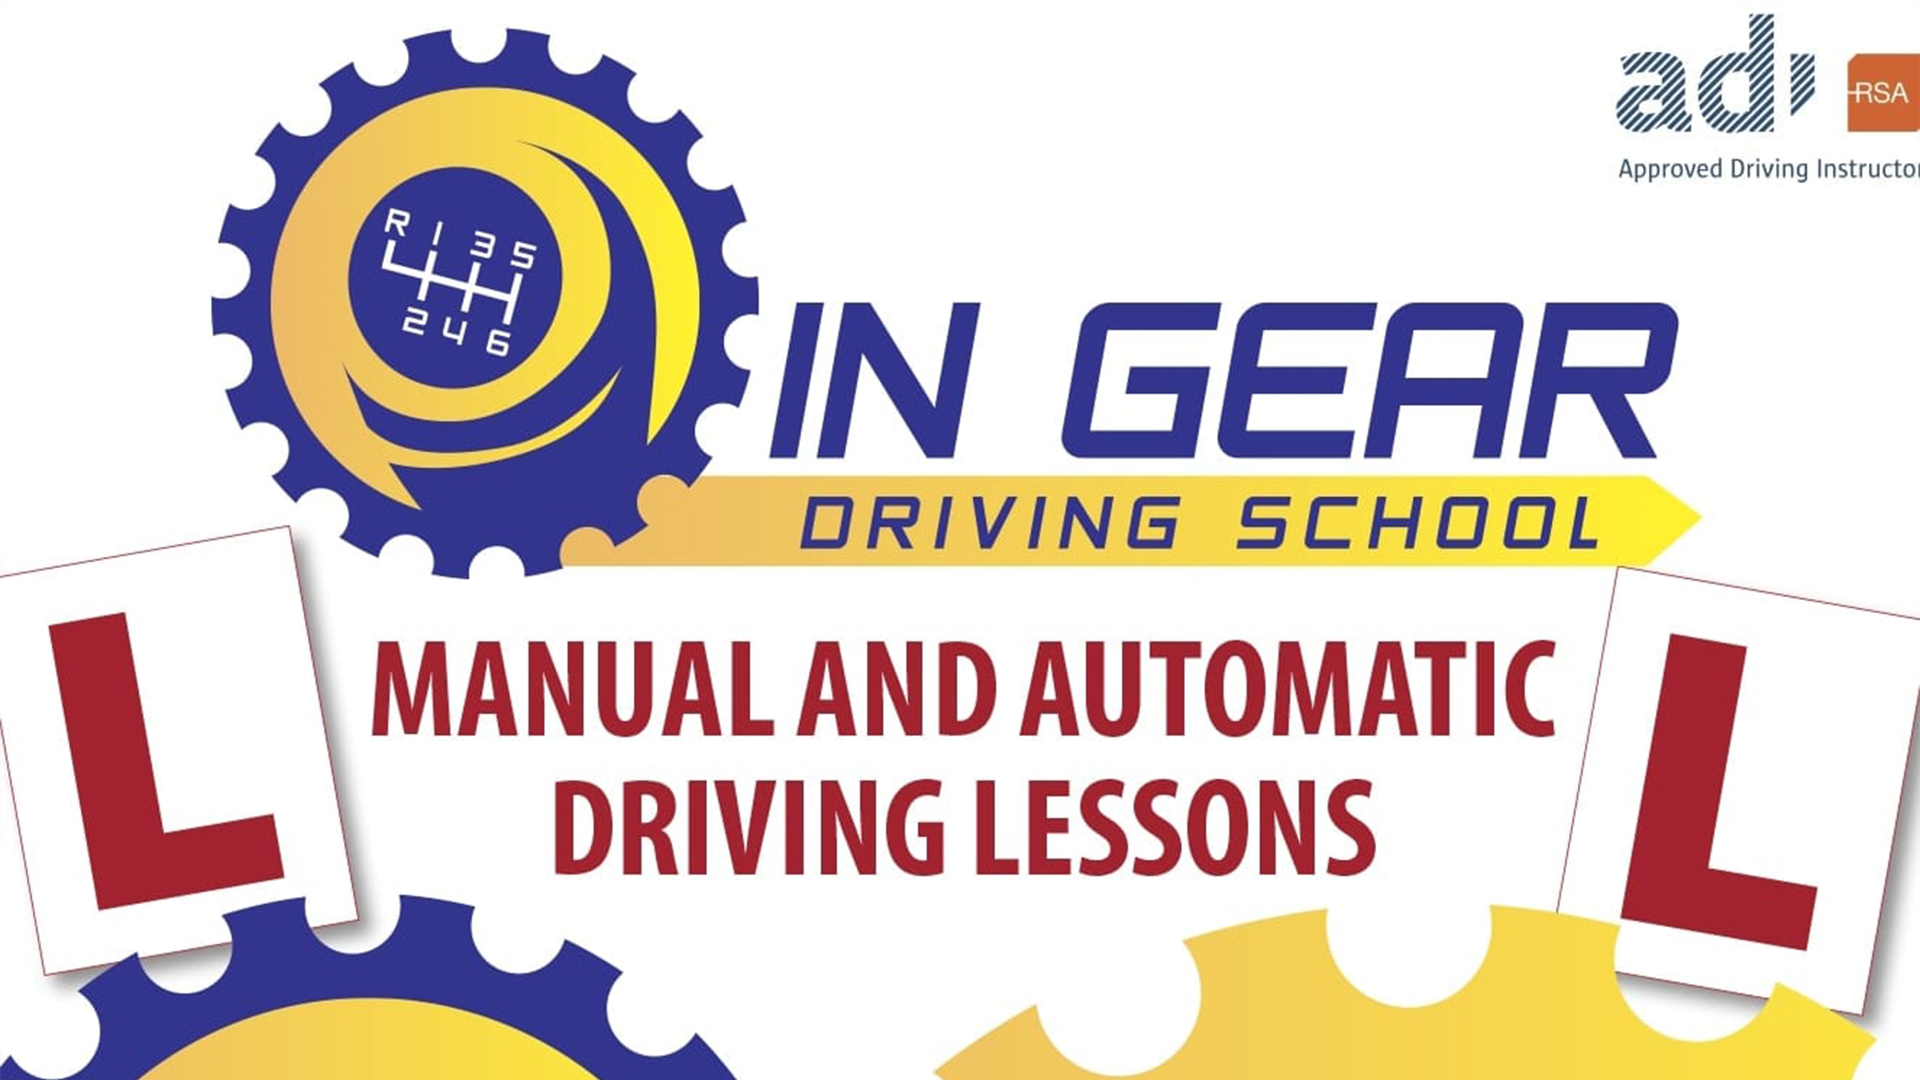 In Gear Driving School